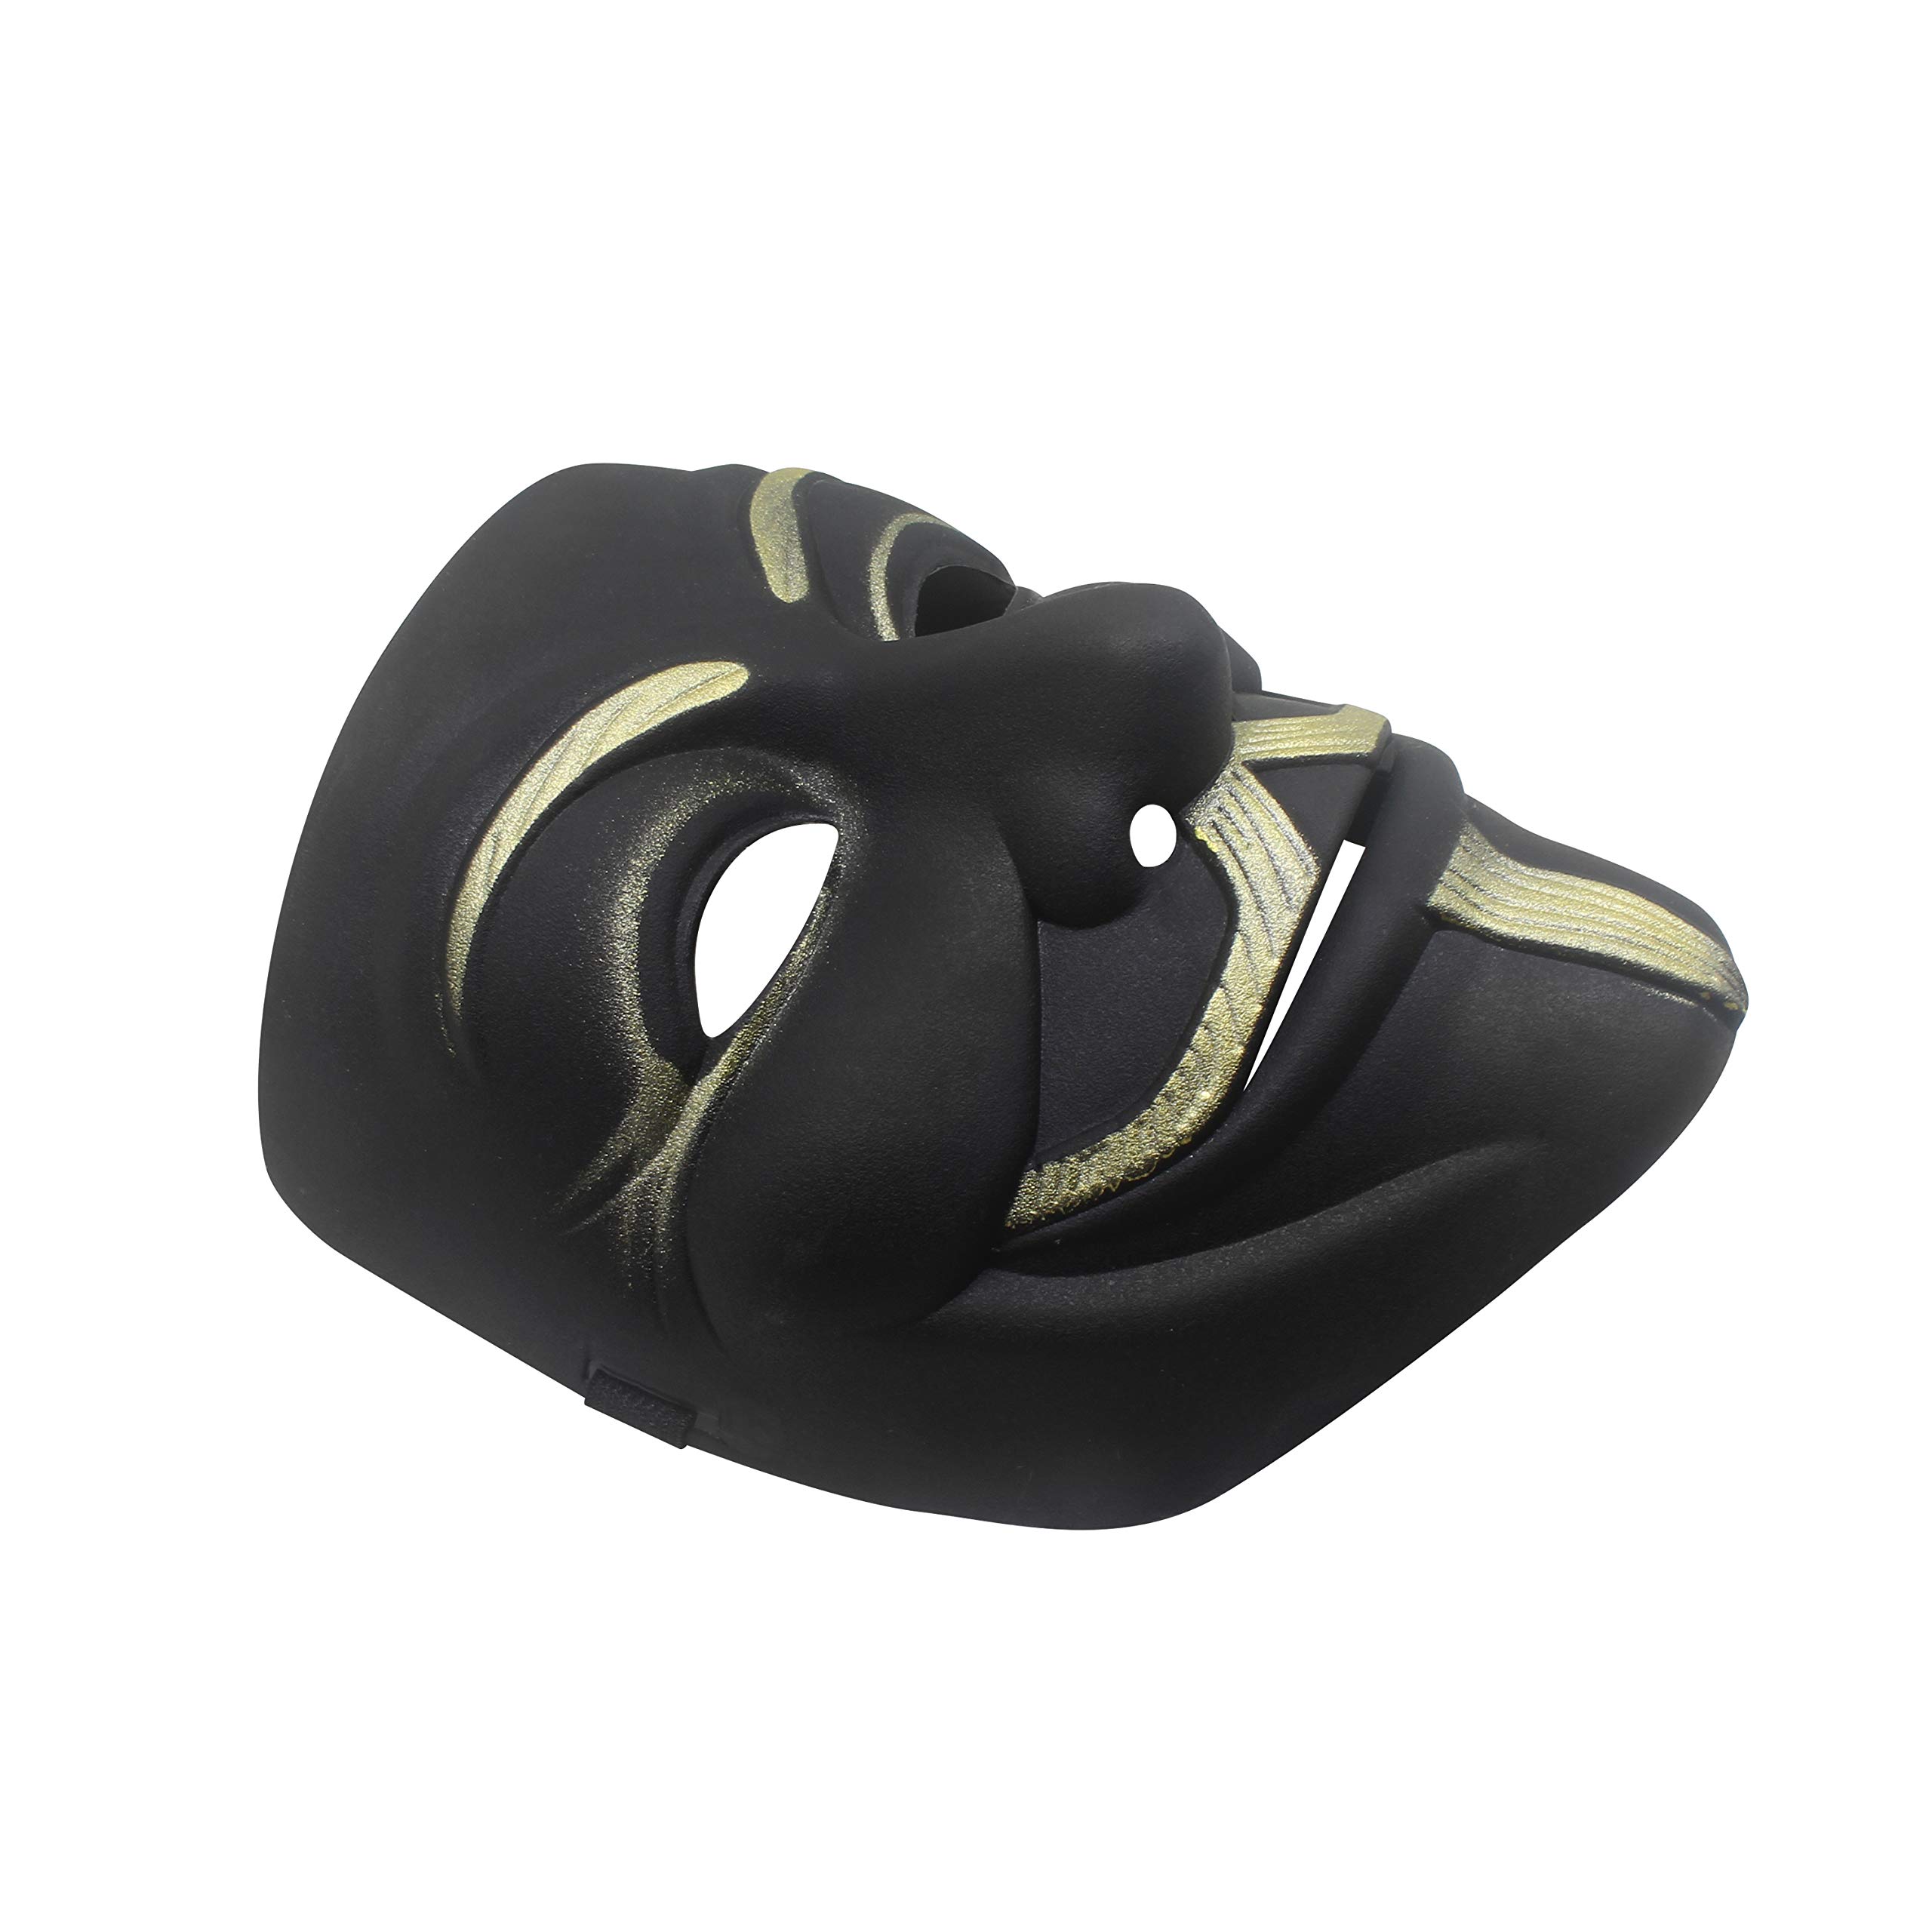 Udekit Hacker Mask V for Vendetta Mask for Kids Women Men Halloween Cosplay Costume